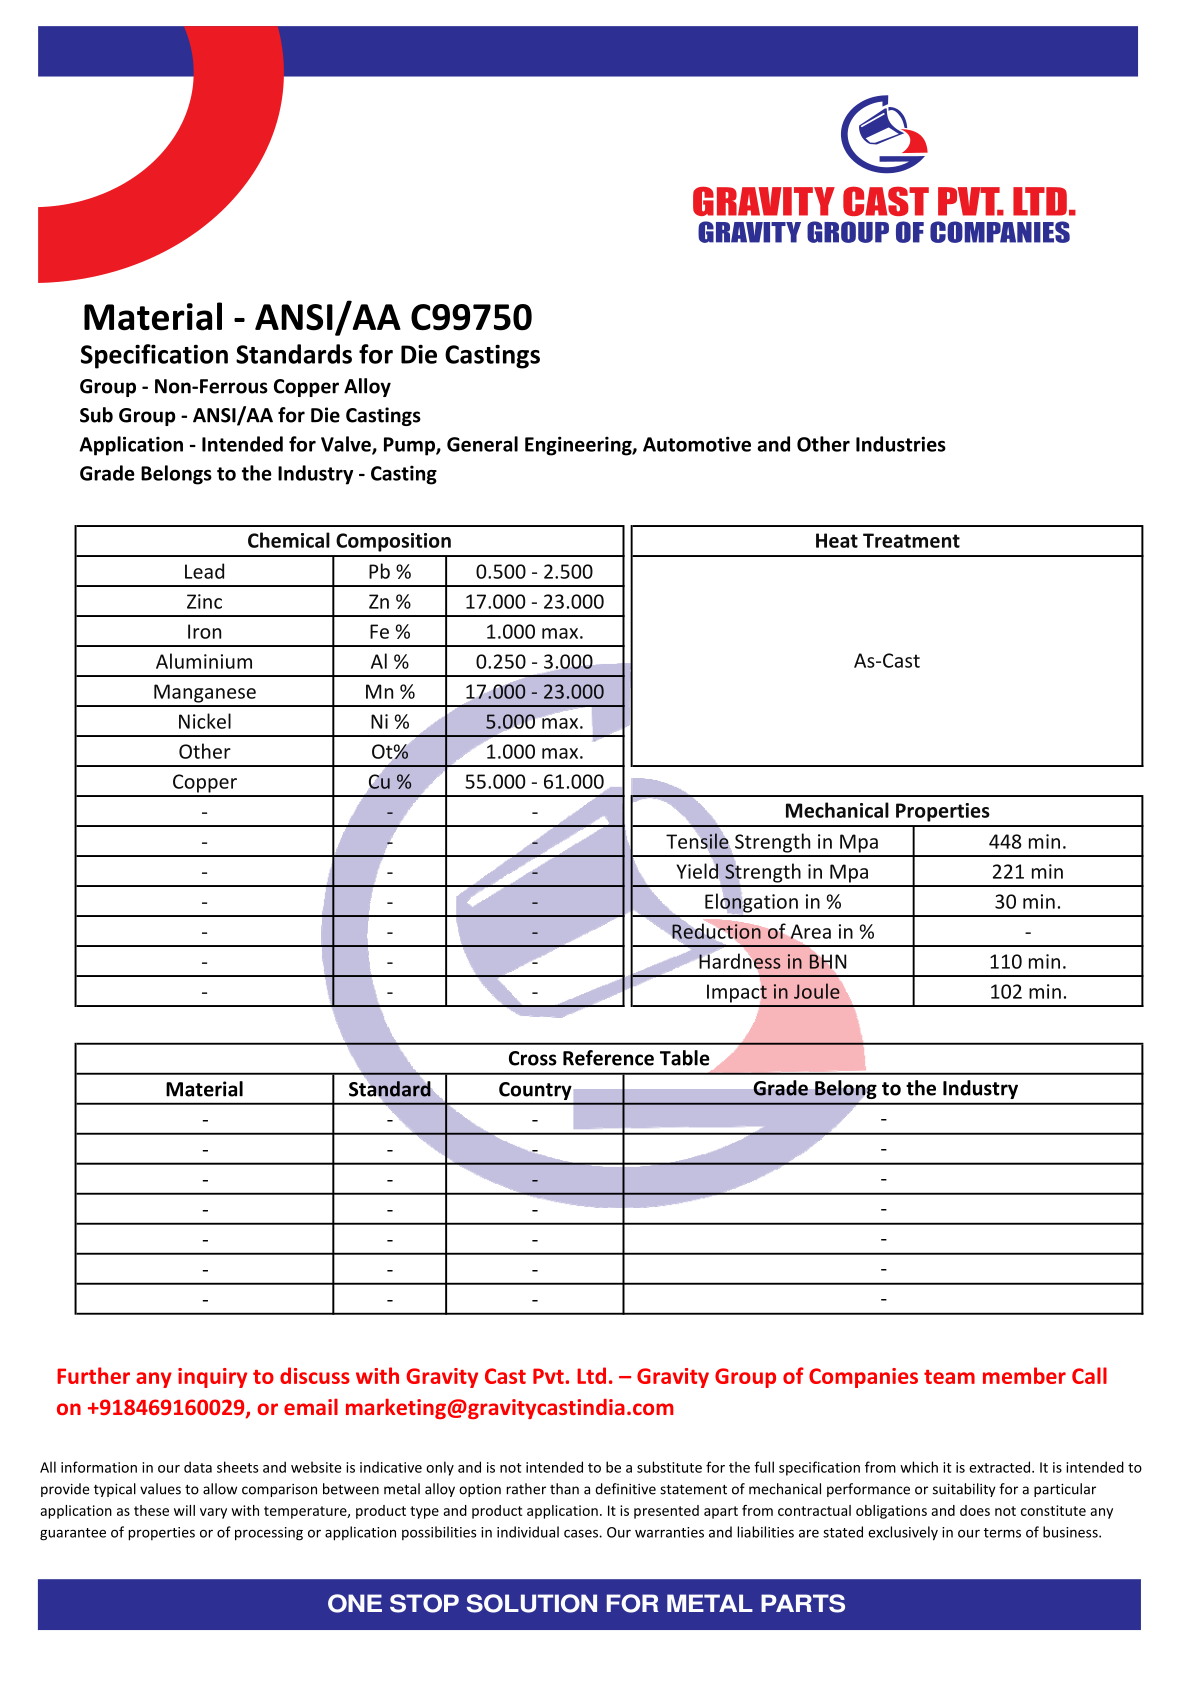 ANSI AA C99750.pdf